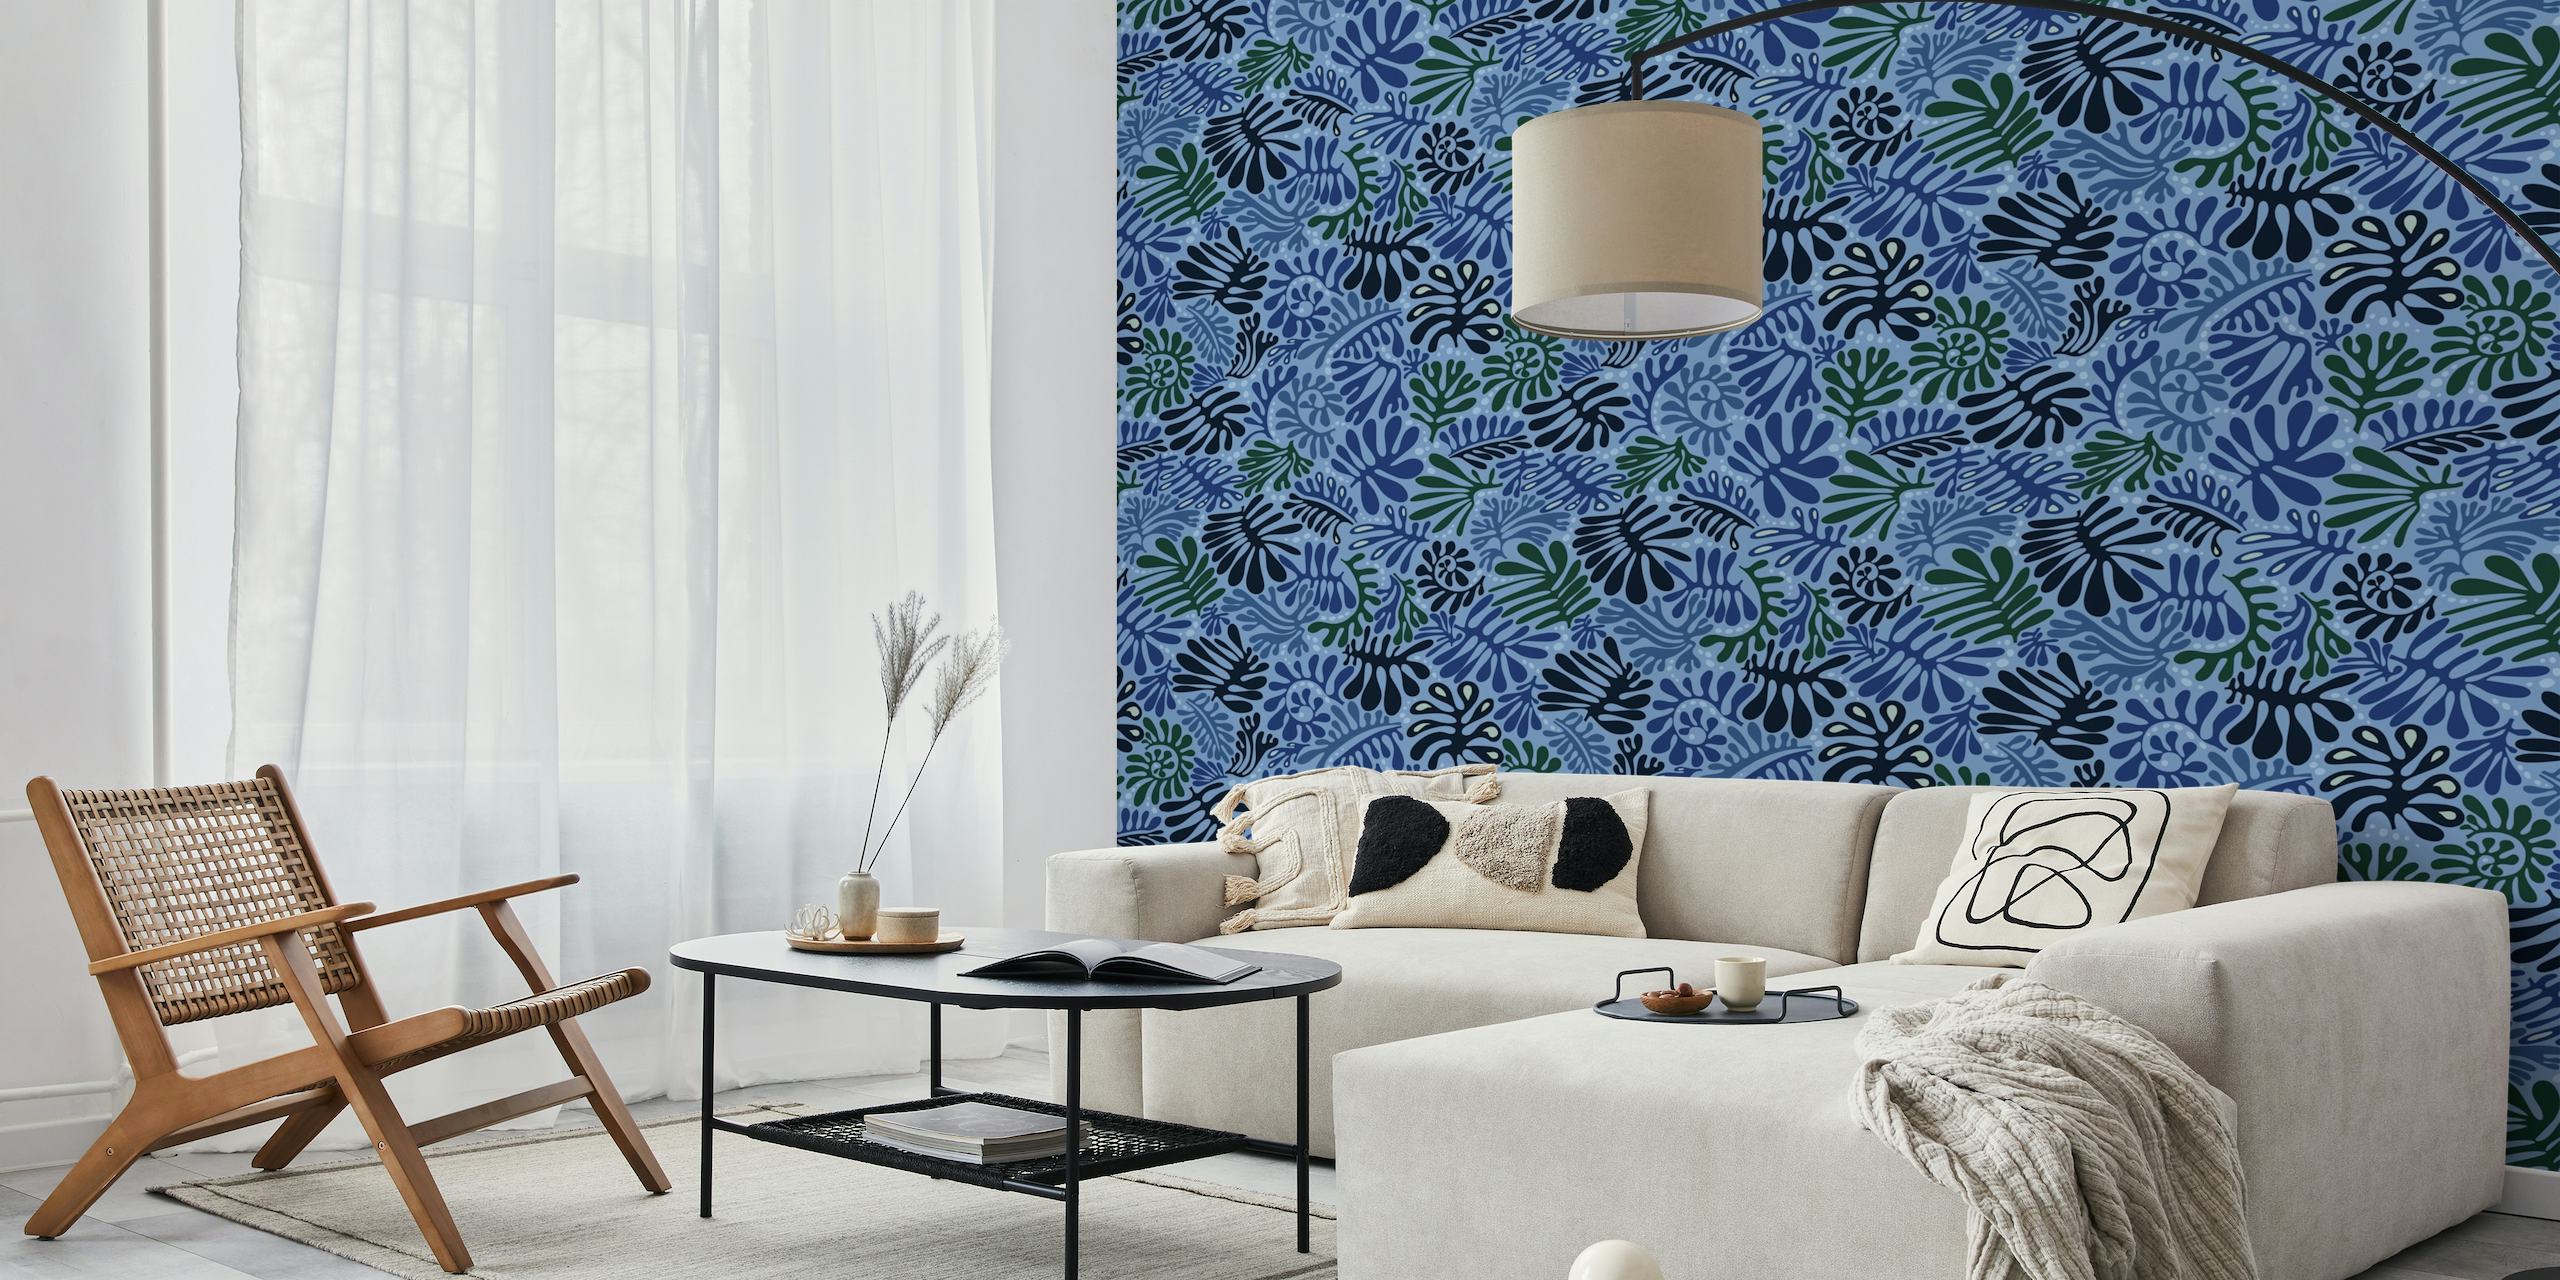 Elegante mural de parede com padrão de folhas azuis de happywall.com com vários tons de azul e designs recortados de plantas.